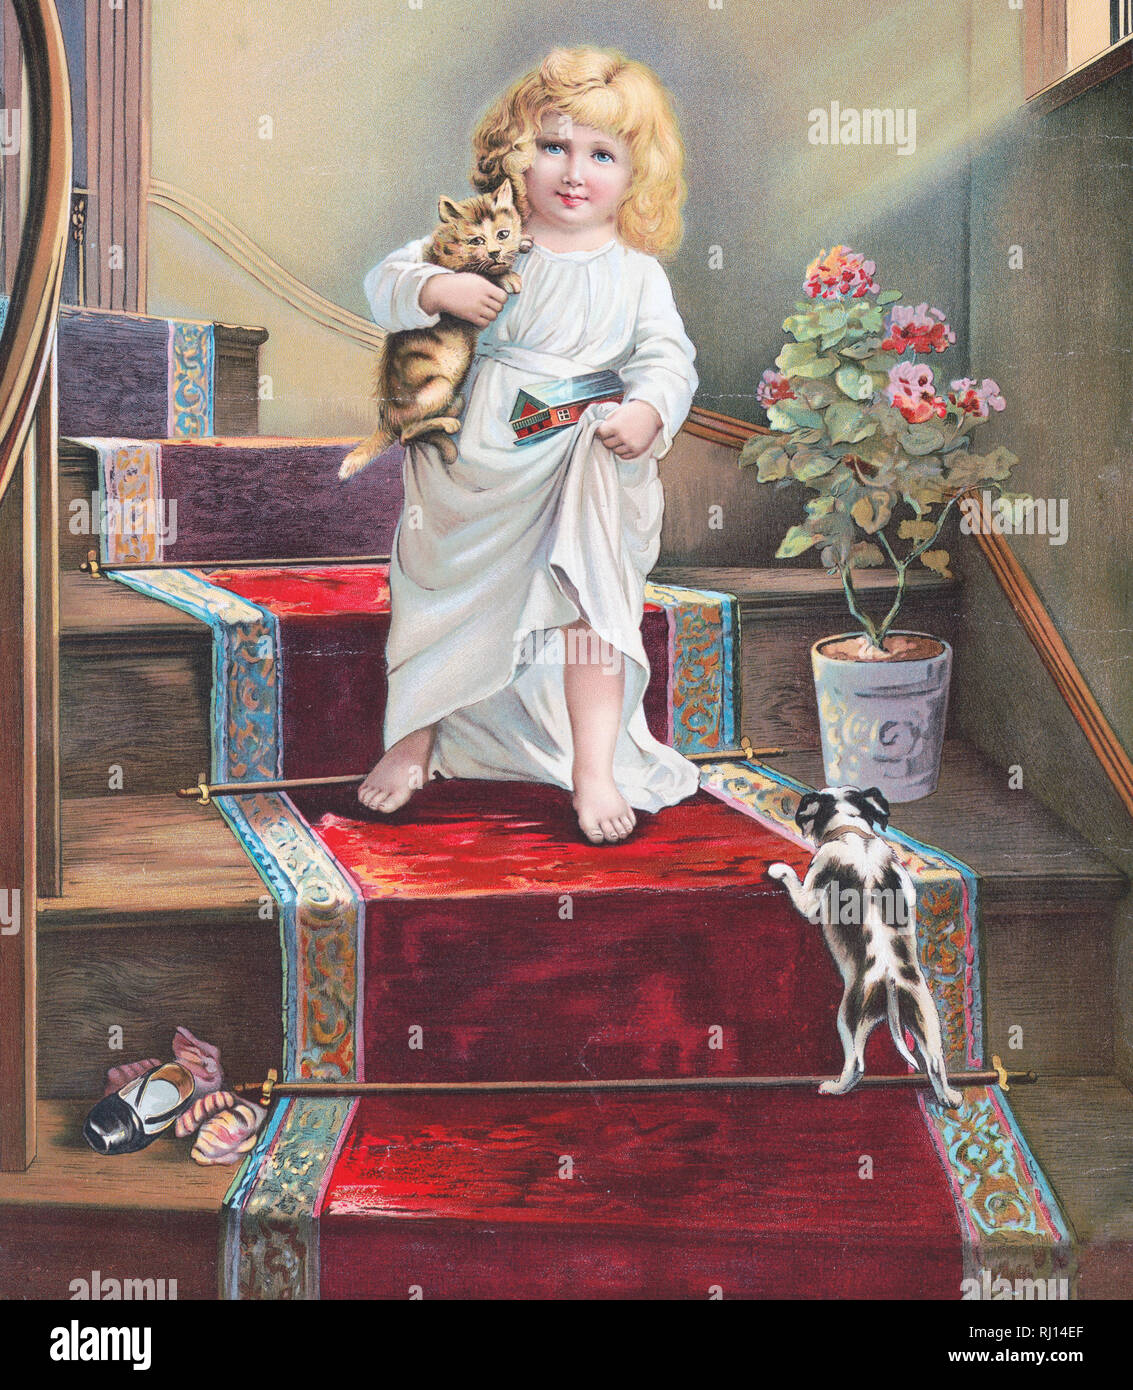 Drucken zeigt ein junges Mädchen, dass eine Katze in Ihrem rechten Arm und einem Spielzeug Arche Noah (?) in der linken Hand, Treppen, die sich mit einem Läufer Teppichboden, einen Welpen wartet darauf, Sie zu begrüßen; Stockfoto